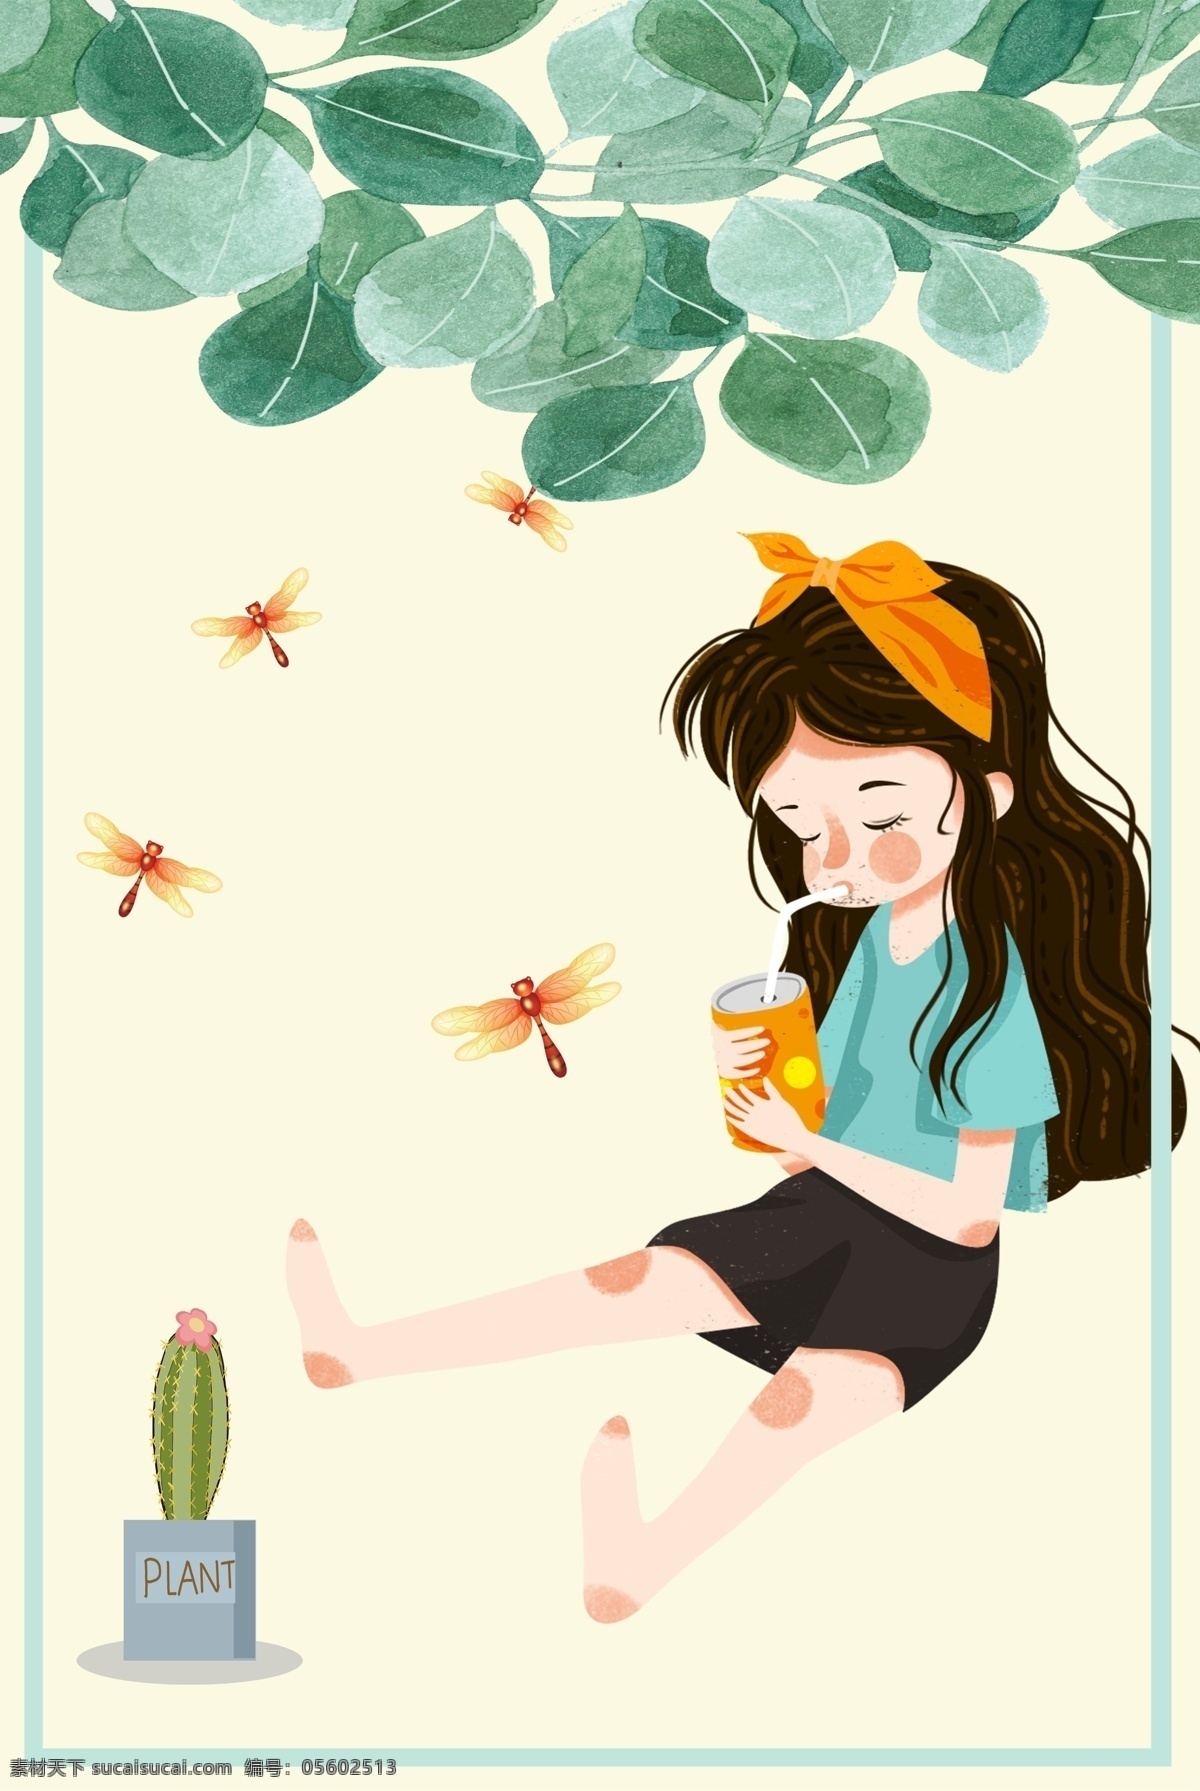 彩色 女孩 卡通 插画 背景 创意 装饰 叶子 环境 纹理